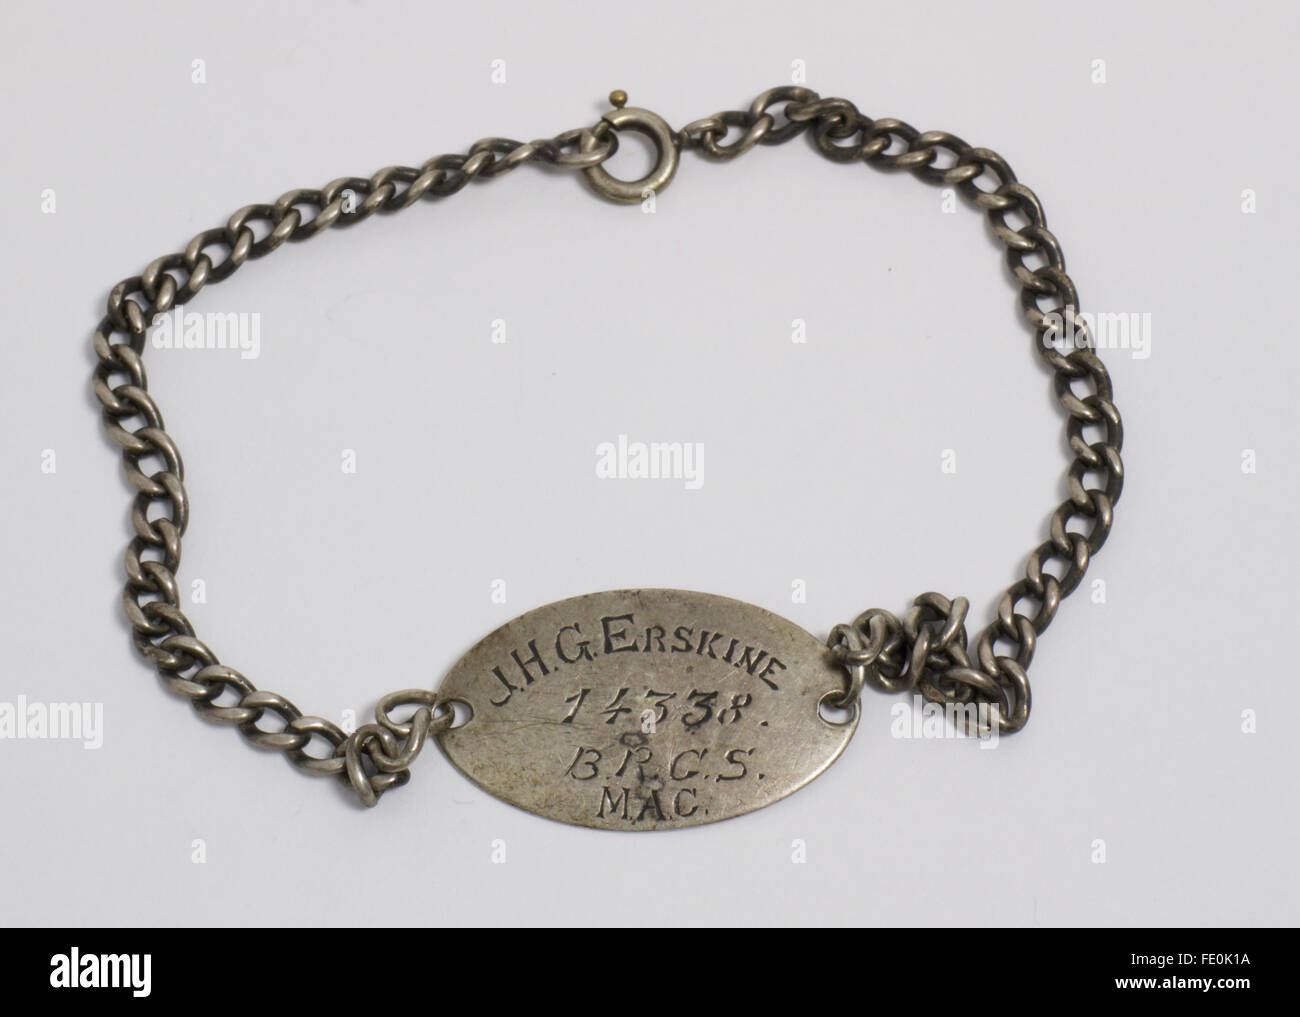 WW1 ID-Armband. Die ovale Plakette ist eingraviert "J.H.G. Erskine 14338 B.R.G.S.MAC", die Rückseite mit "Etaples. Das Armband zeigt Stockfoto